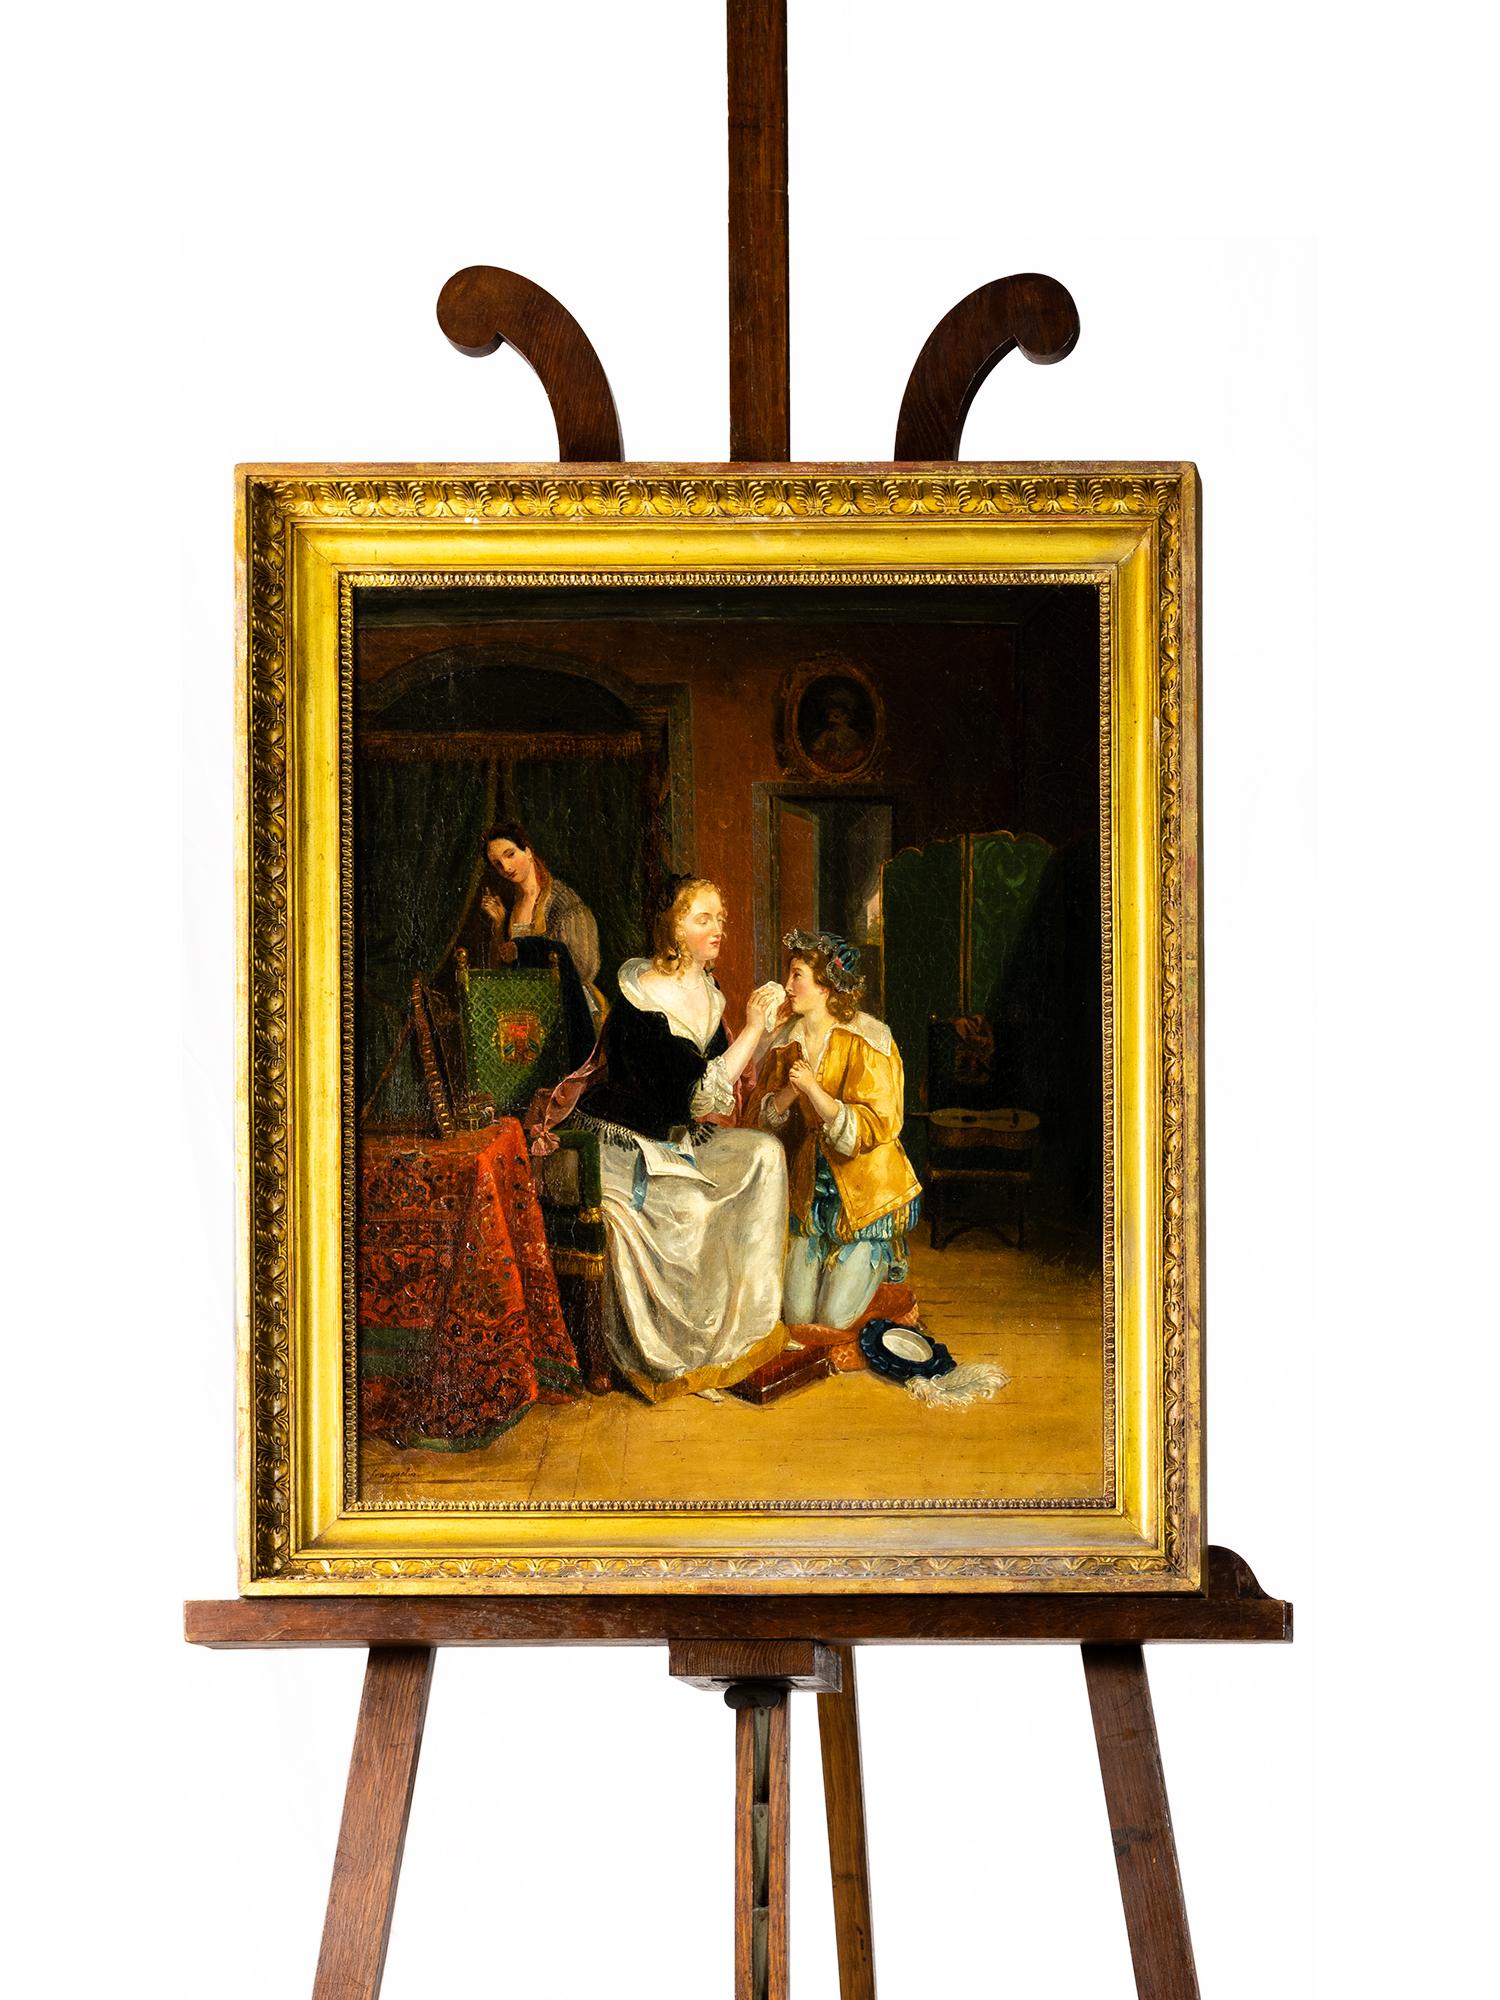 Ein Gemälde des Romantikers Jean-Augustin Franquelin mit einer Szene einer knienden, weinenden Tochter und einer die Tränen abwischenden Mutter, signiertes Gemälde, ein bedeutender Maler der École des Beaux-Arts de Paris. 

Leinwand mit craquelet,